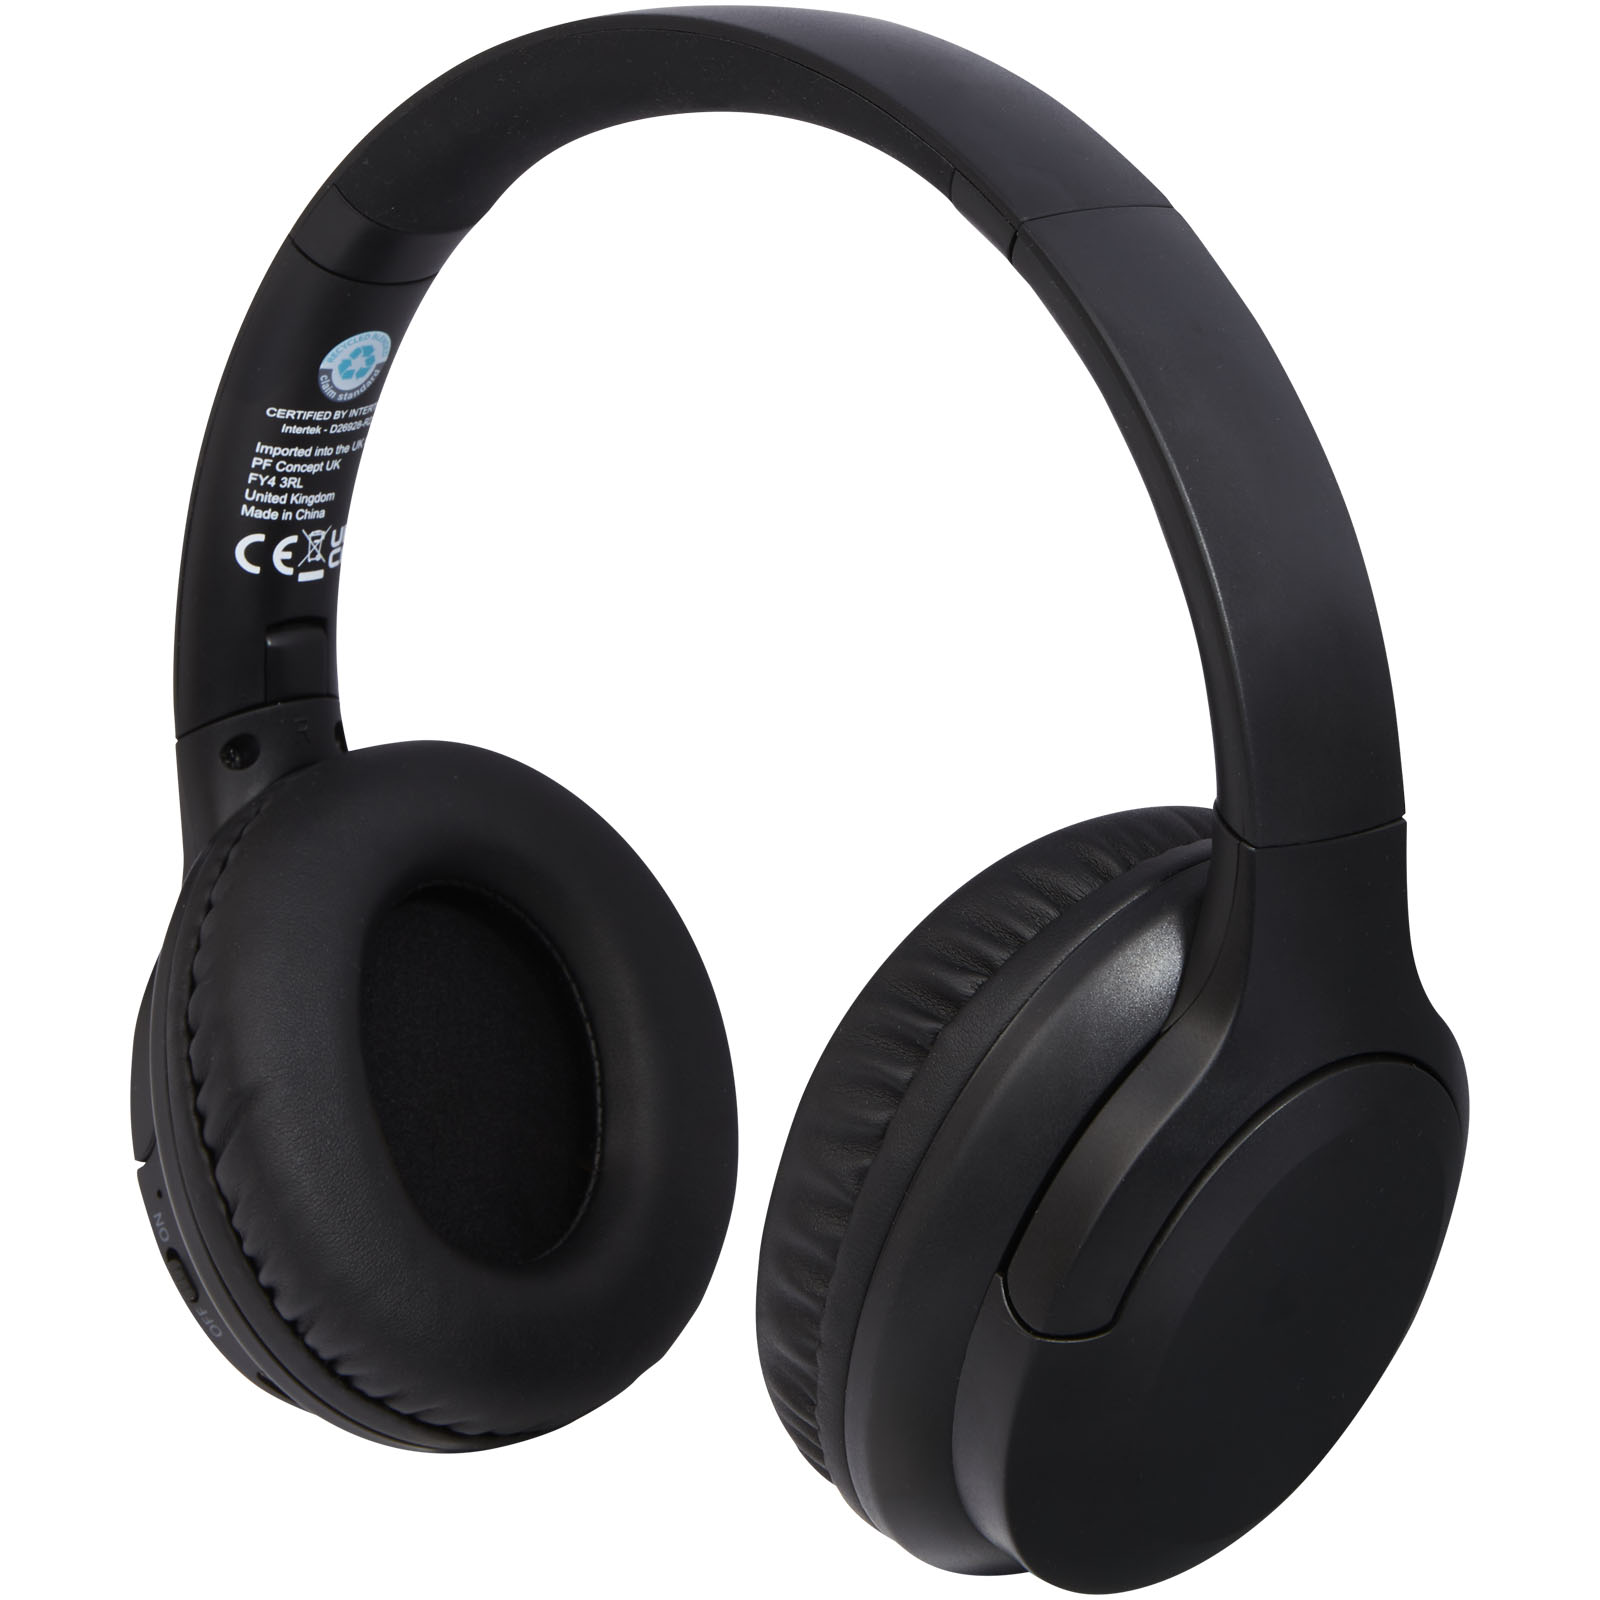 Advertising Headphones - Loop recycled plastic Bluetooth® headphones